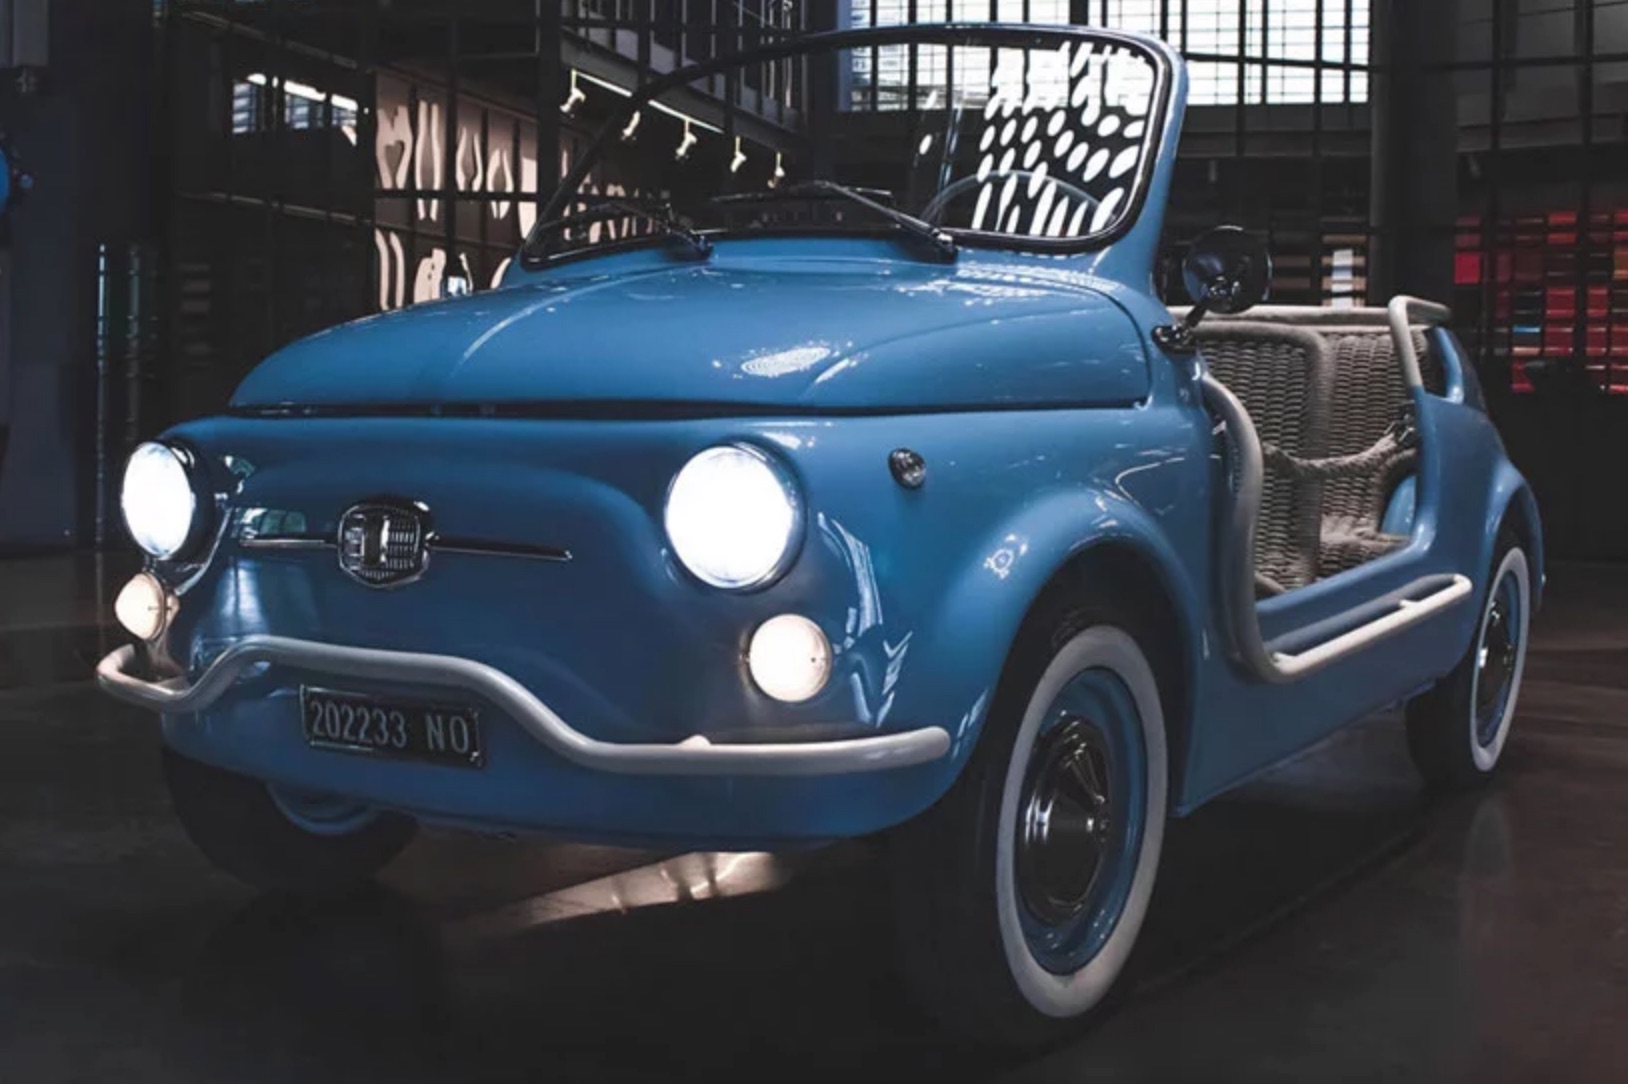 Blue vintage car